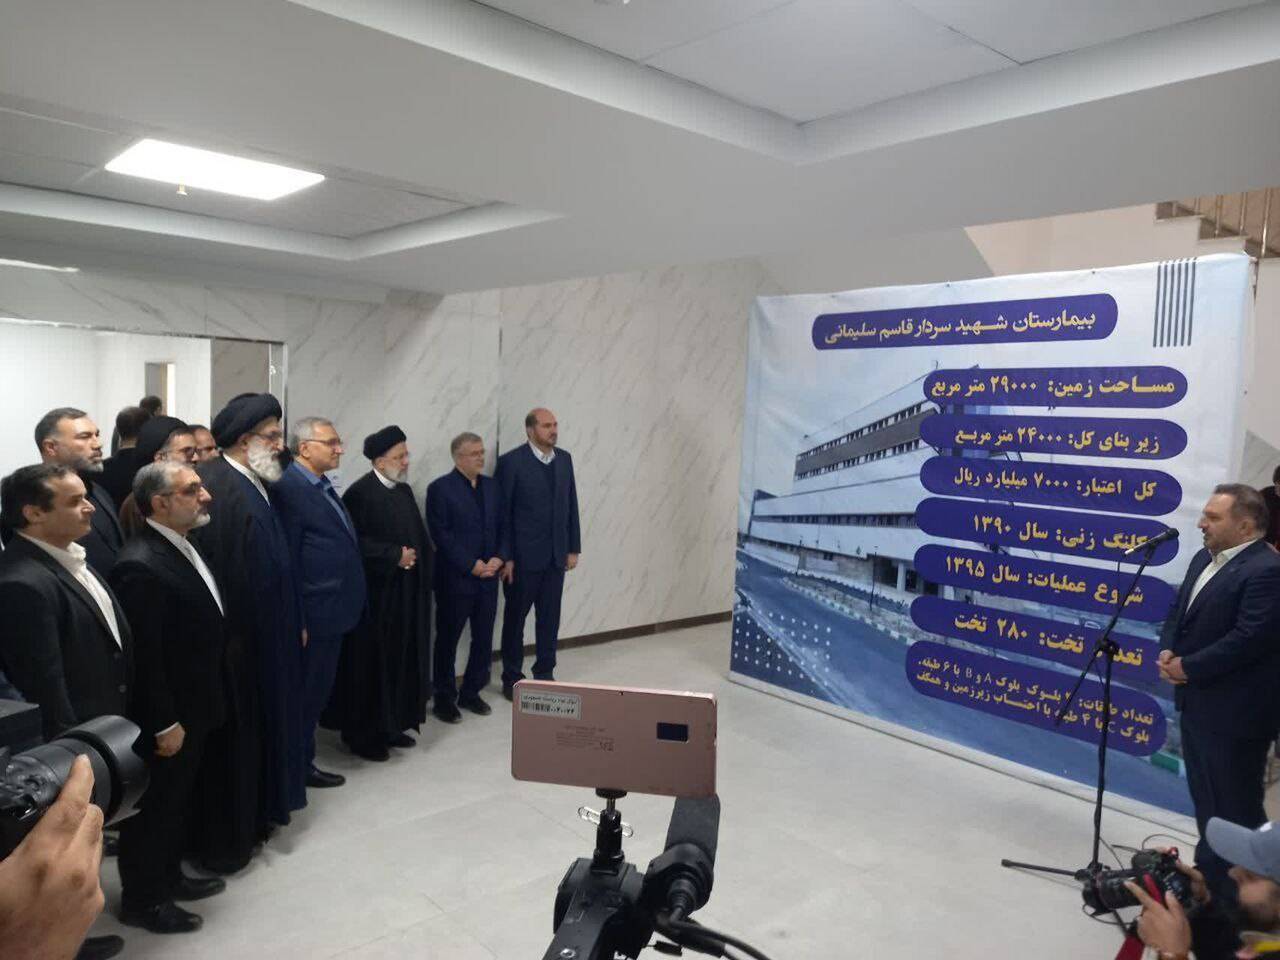 افتتاح بیمارستان شهید سیلیمانی فردیس پس از ۱۲ سال انتظار